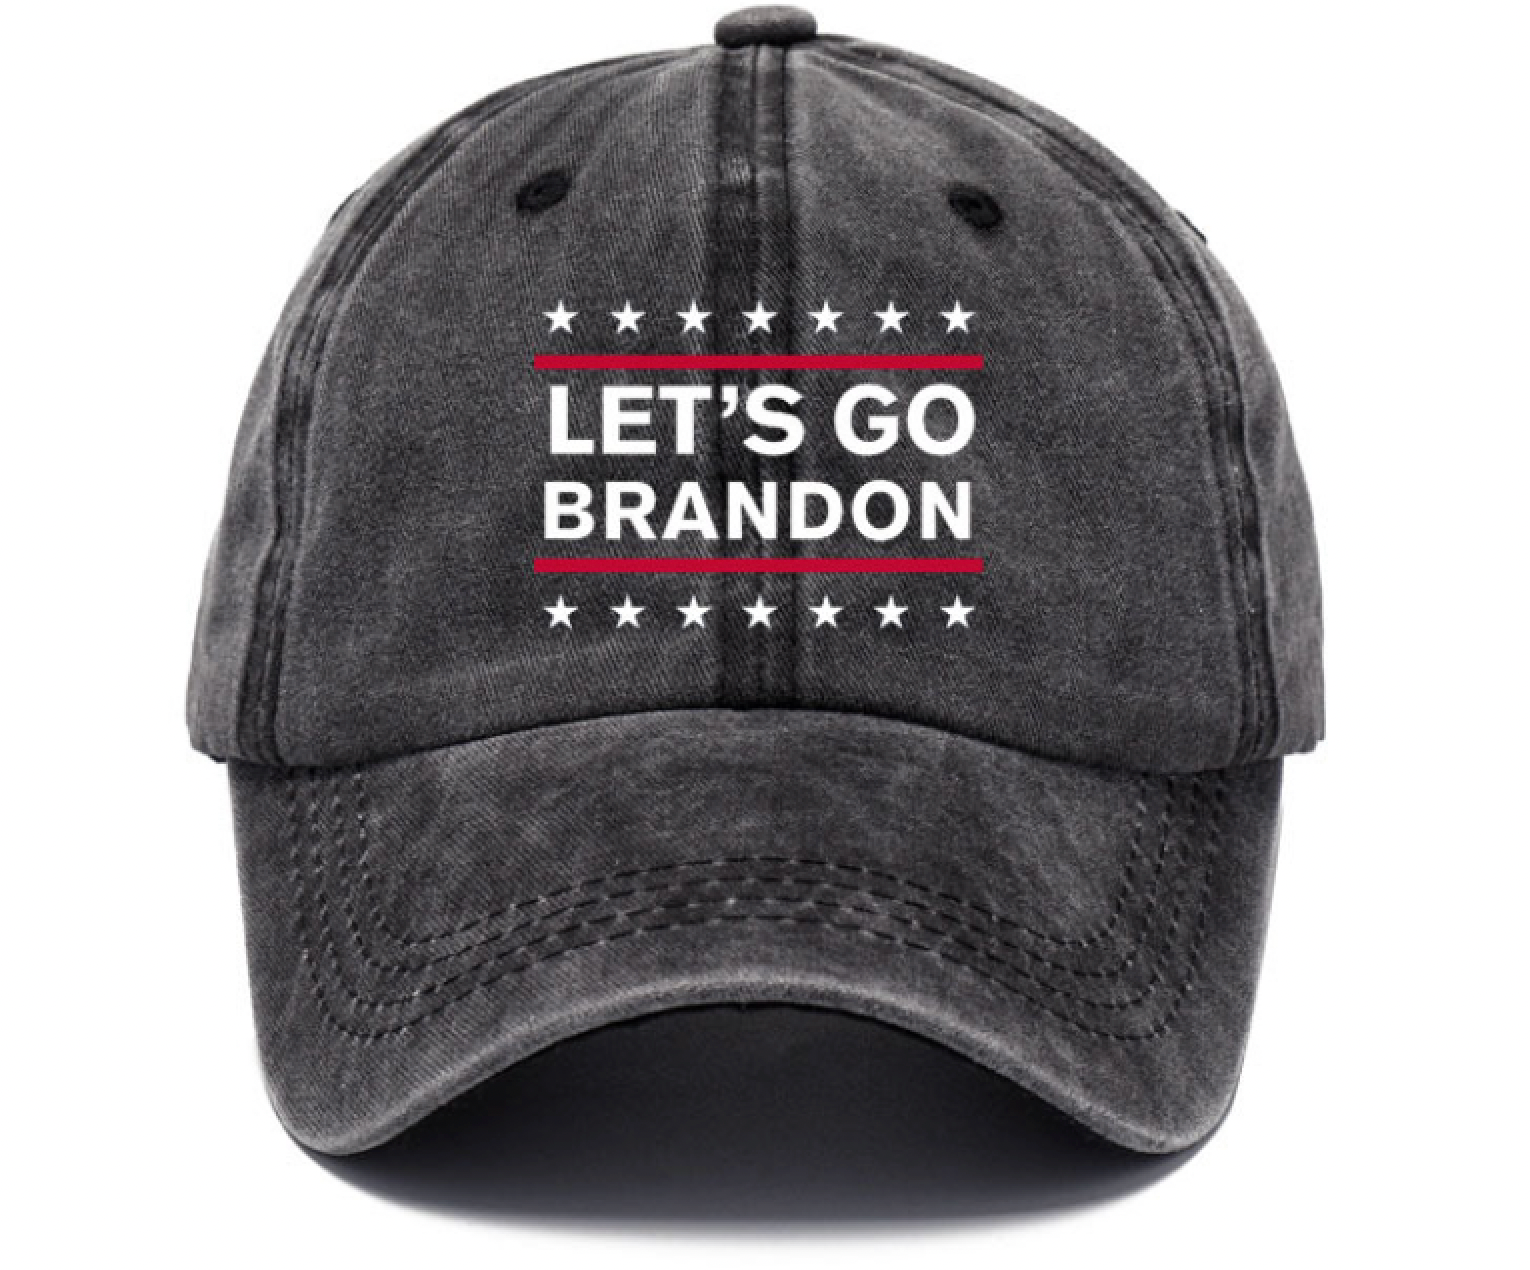 Lets Go Brandon Hat